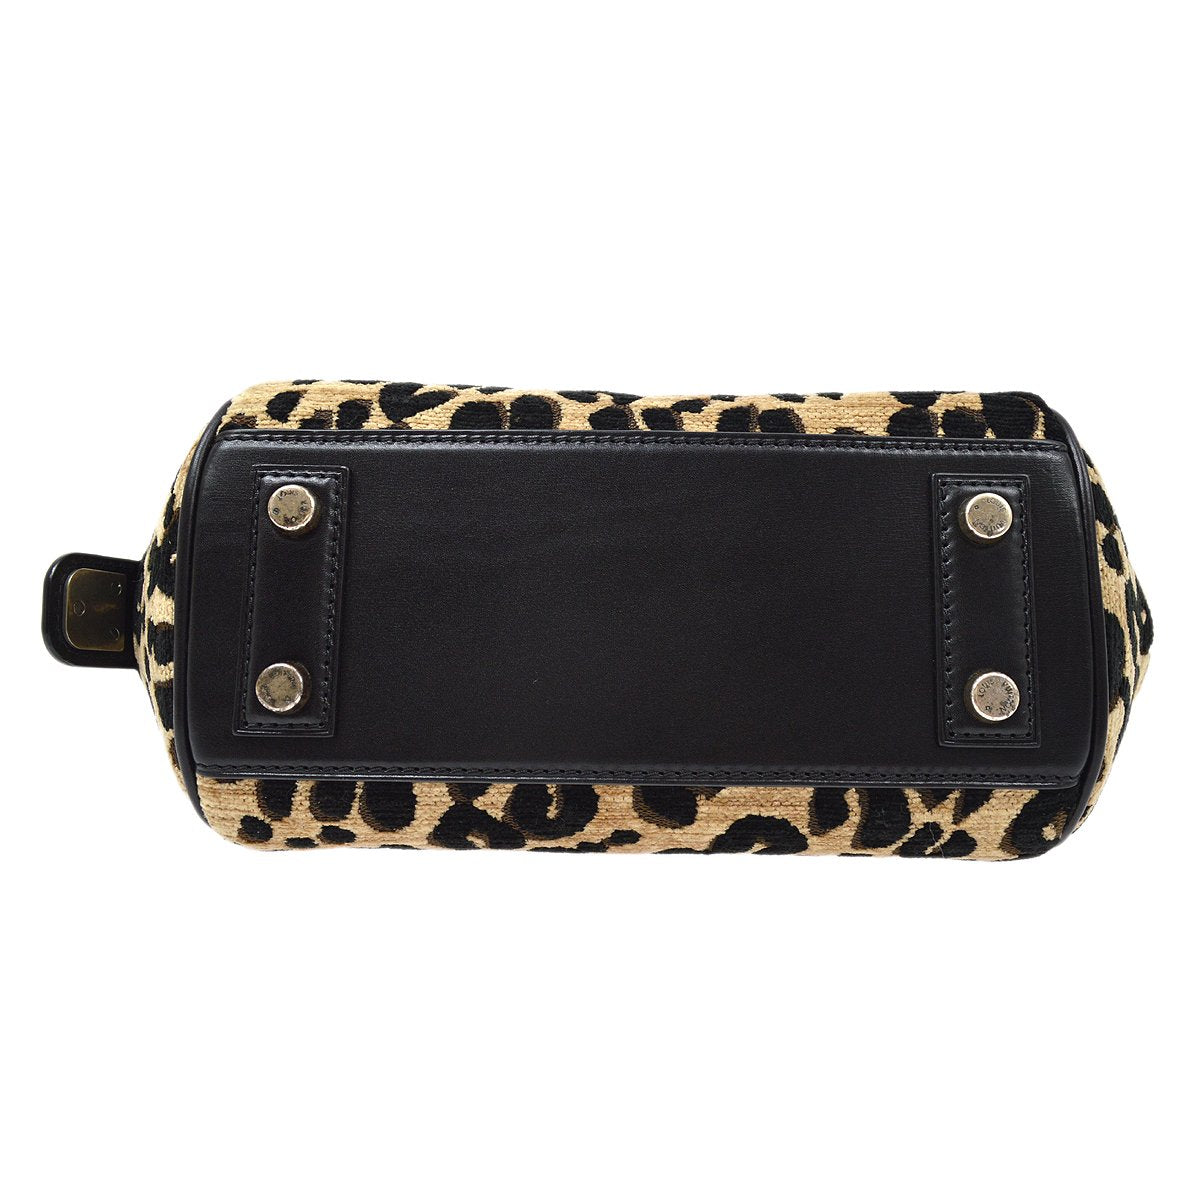 Louis Vuitton Leopard Baby Hand Bag Fl3112 Purse M94257 2012 Collection